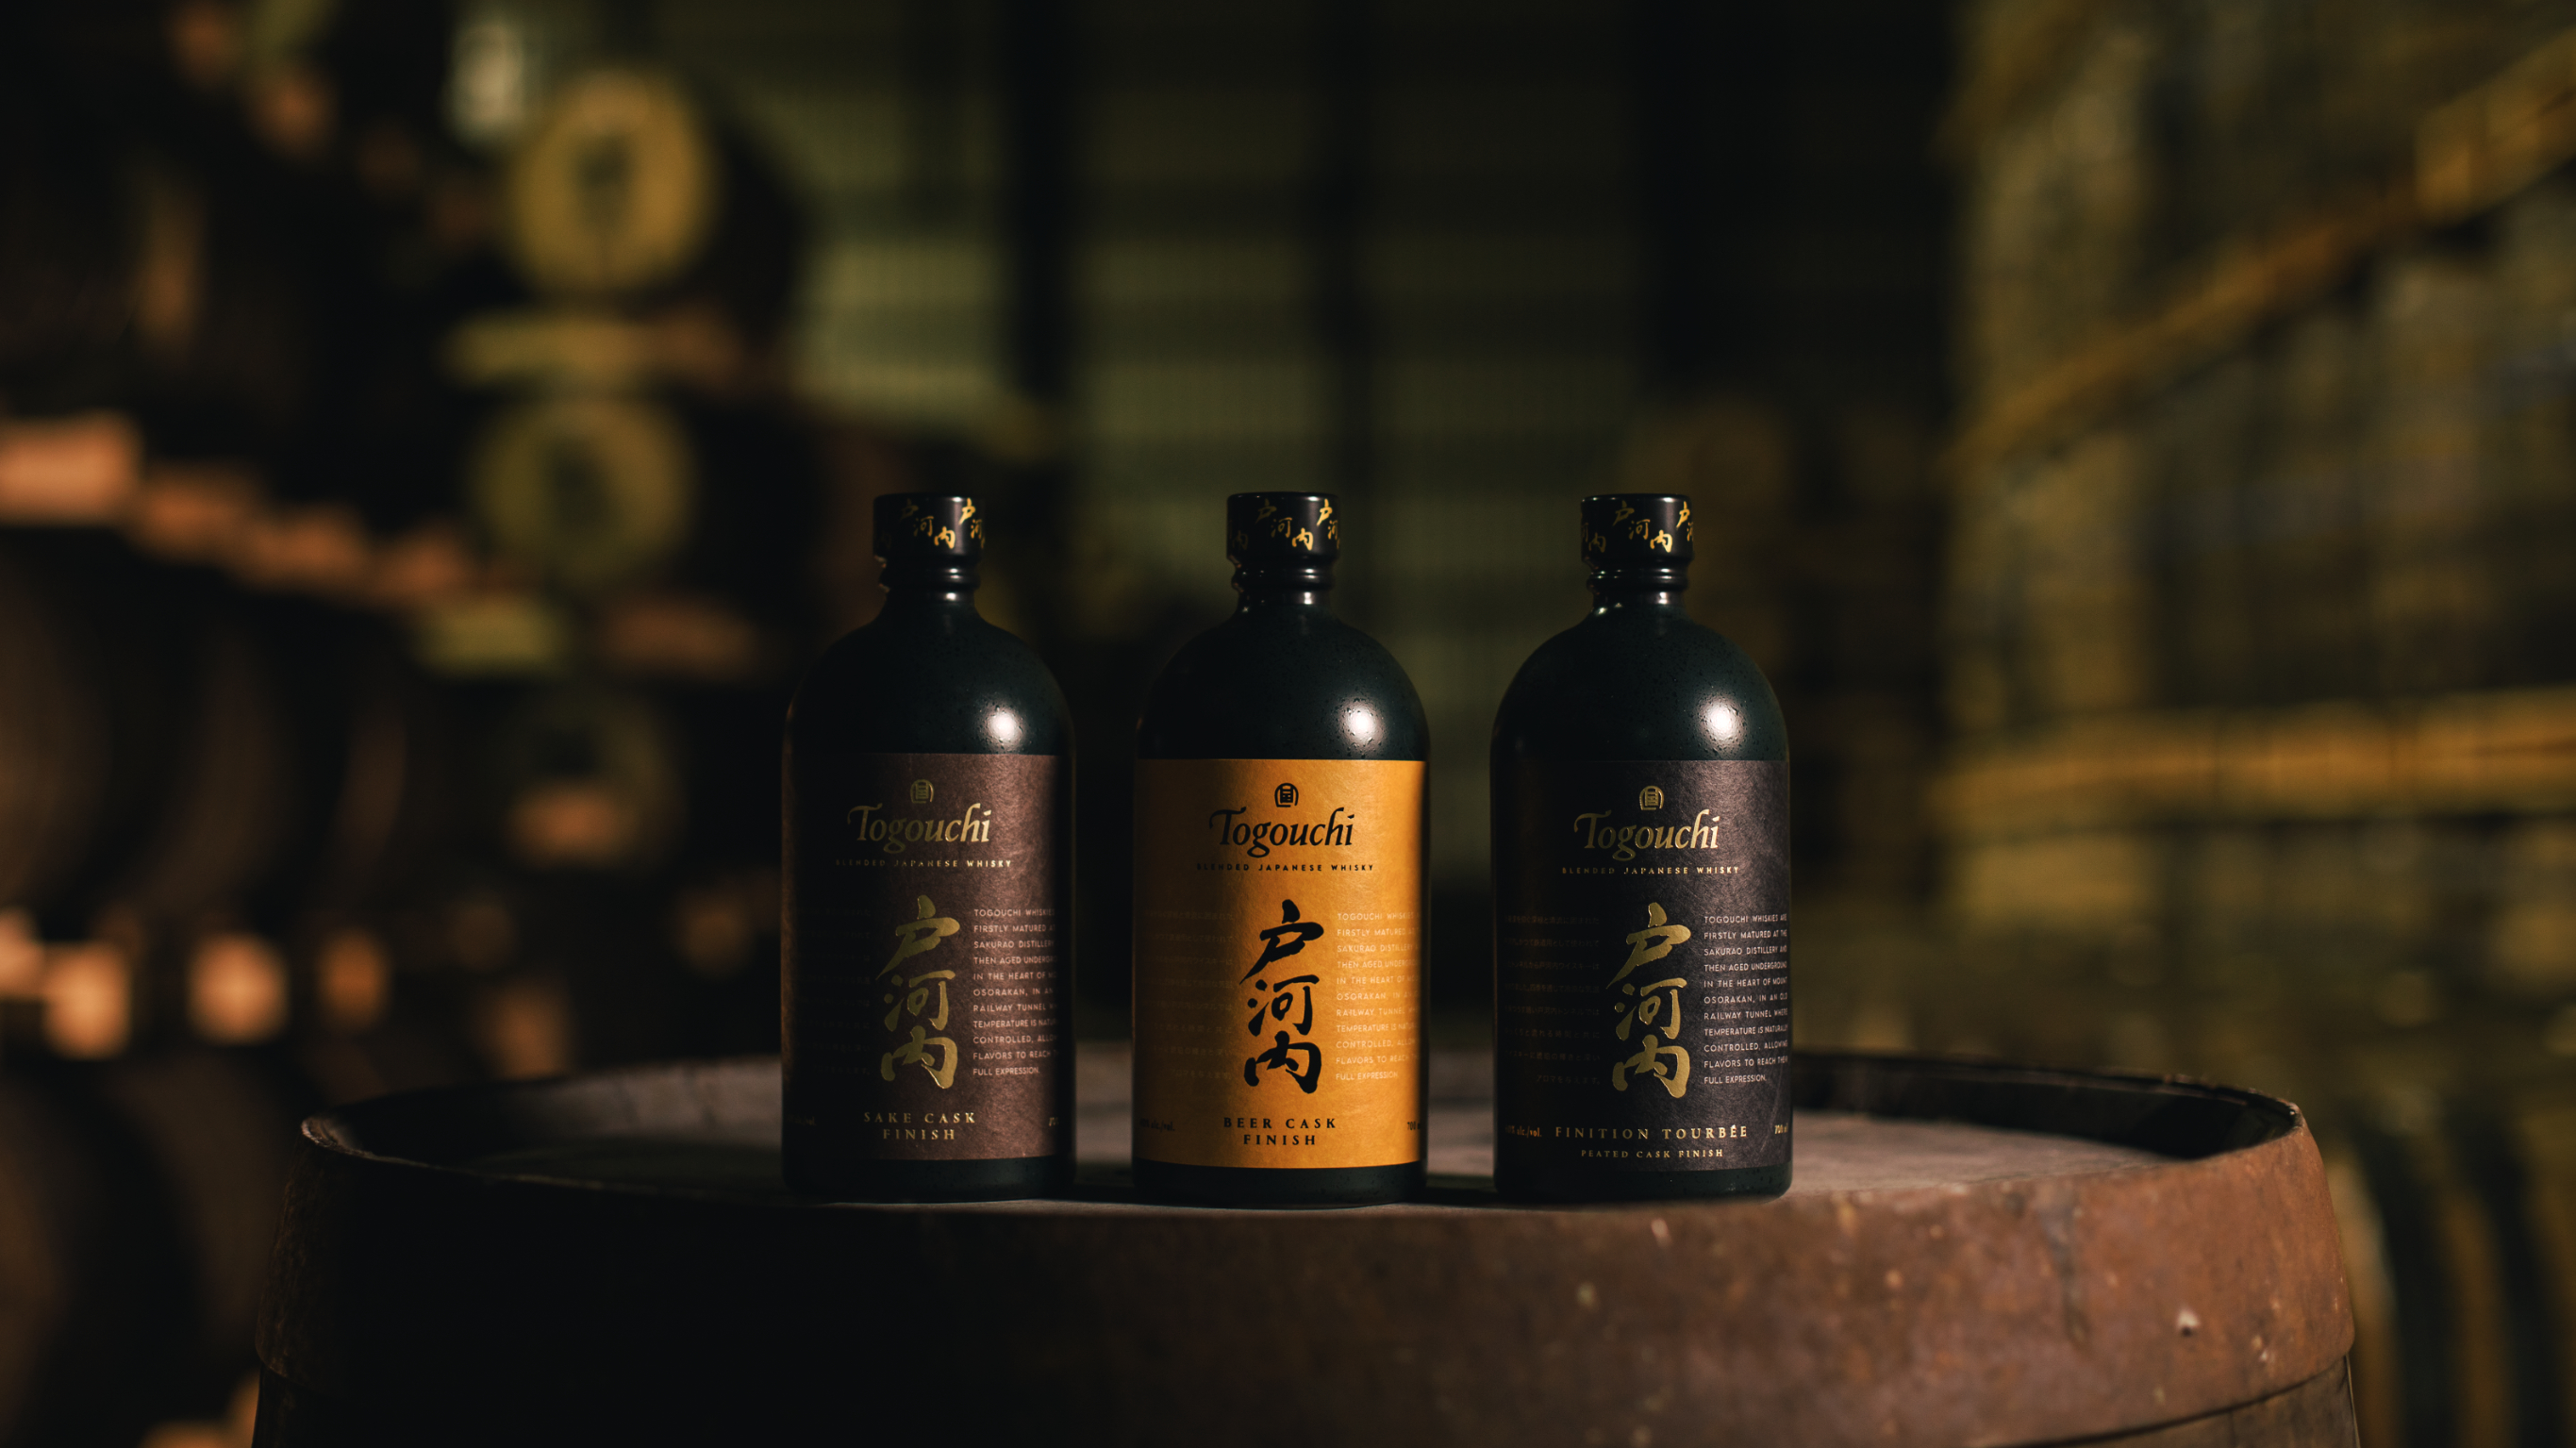 Togouchi Japanese Single Malt Whisky Sakurao Distillery